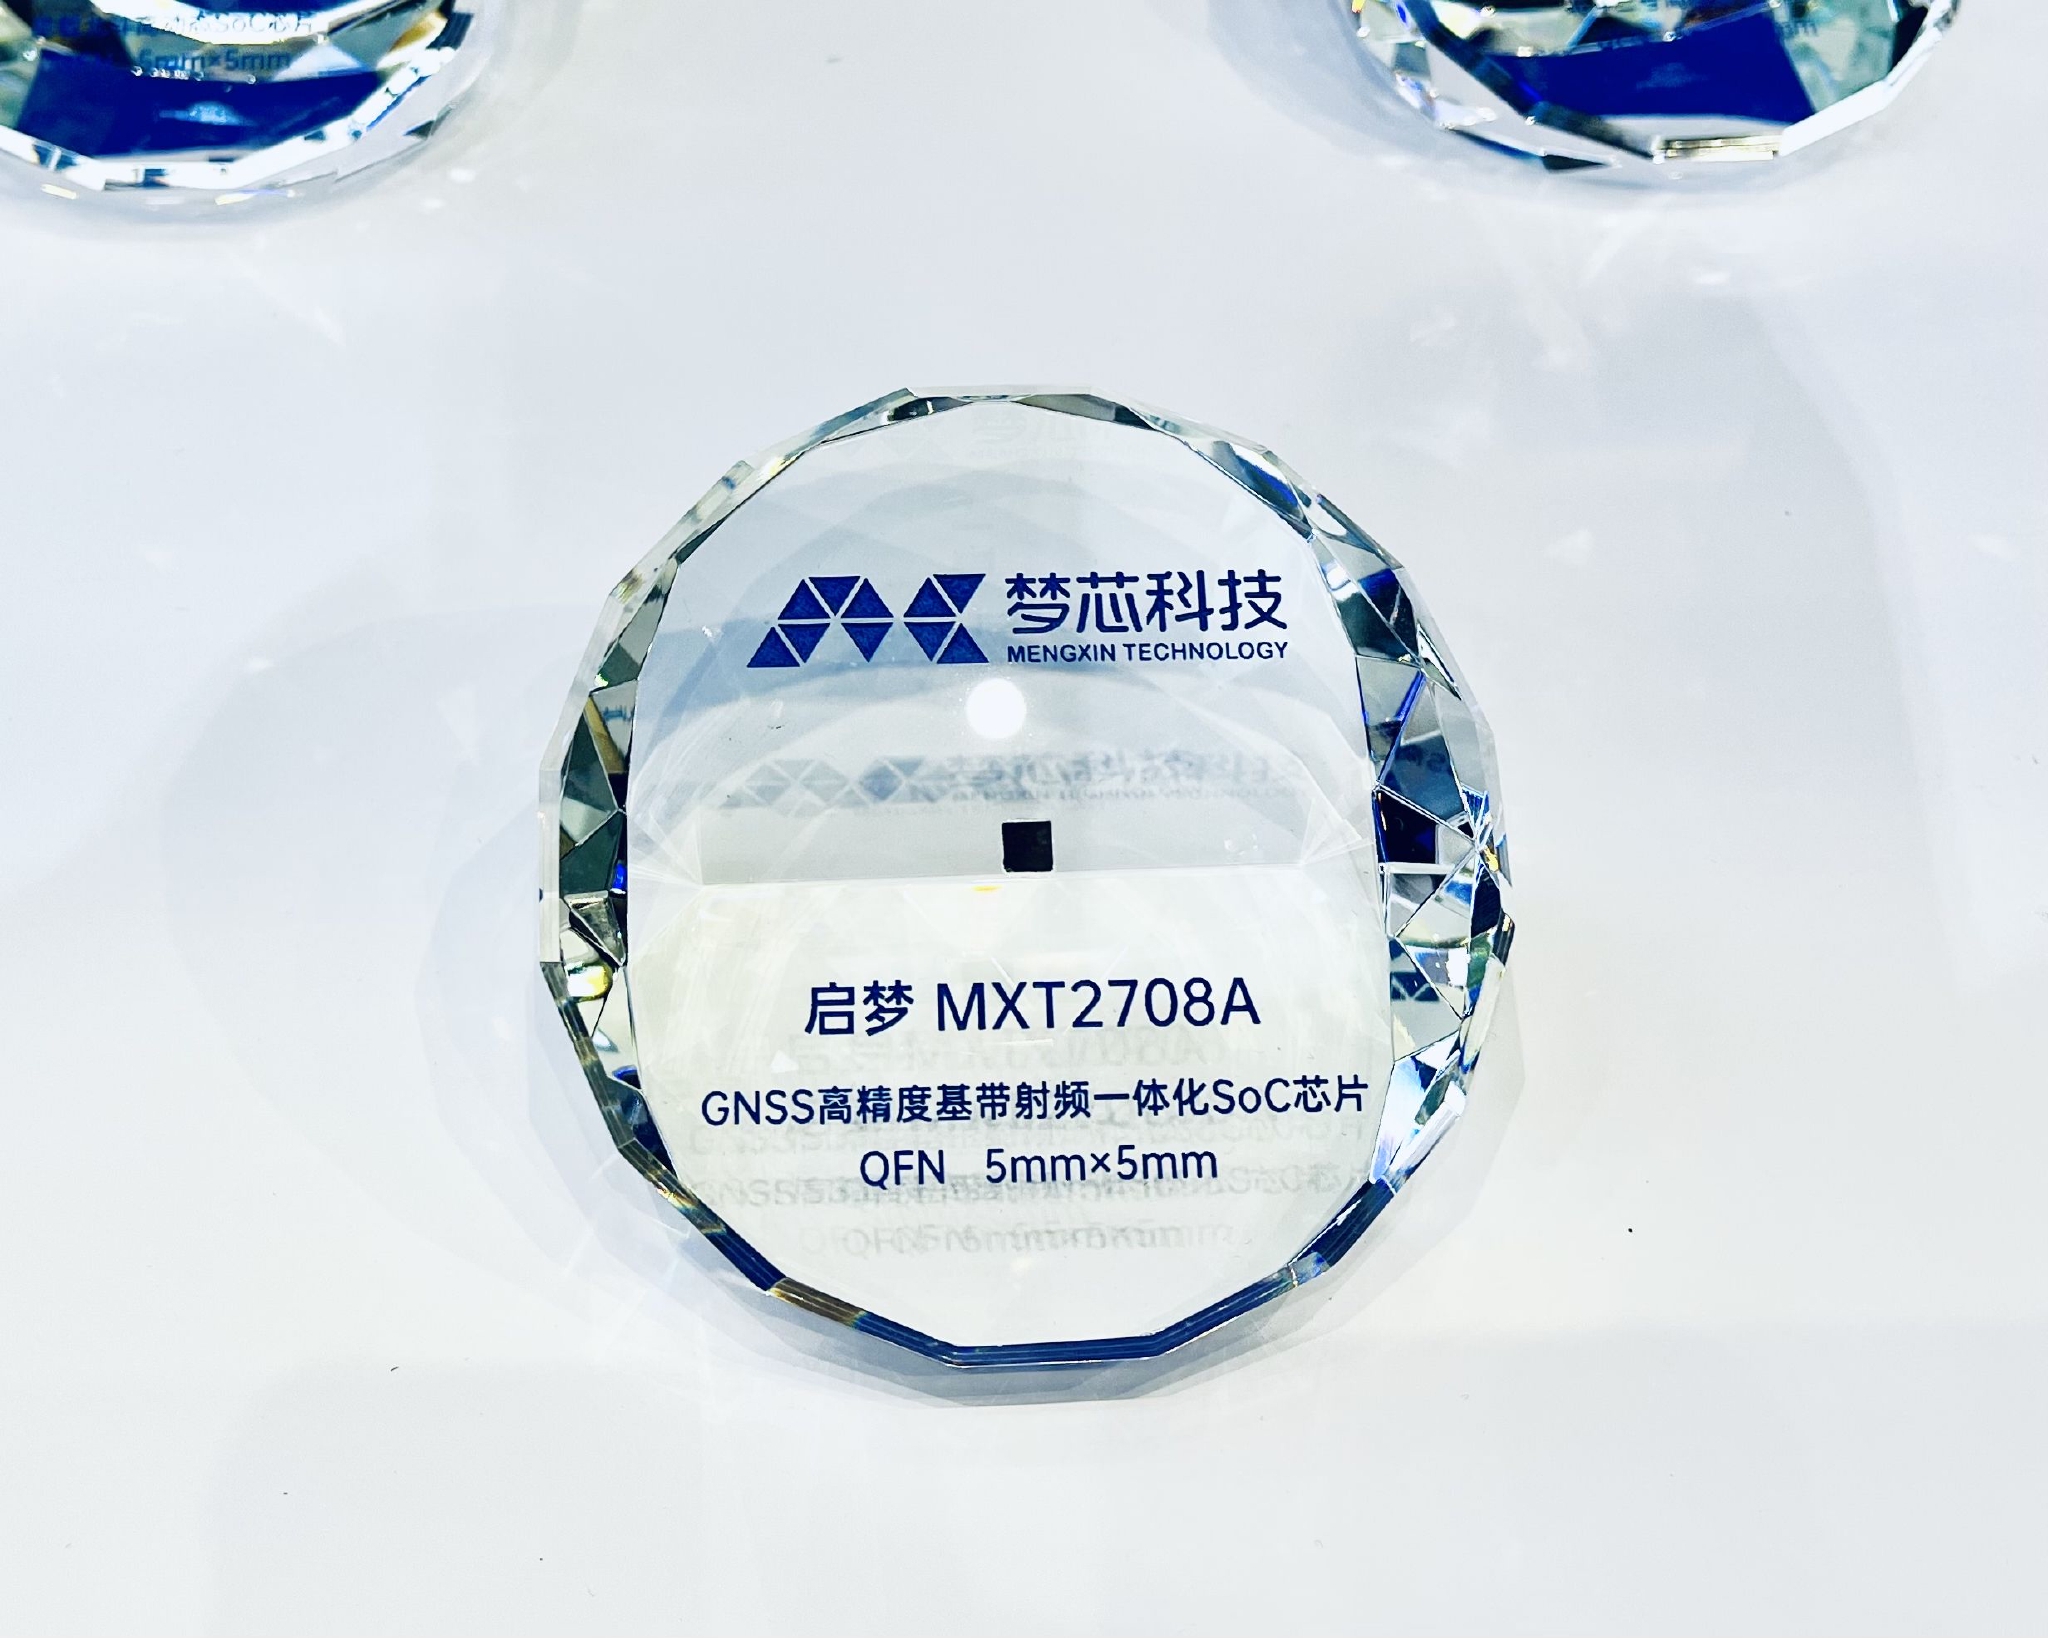 梦芯科技设计研发的北斗高精度芯片“启梦MXT2708A”。受访者供图